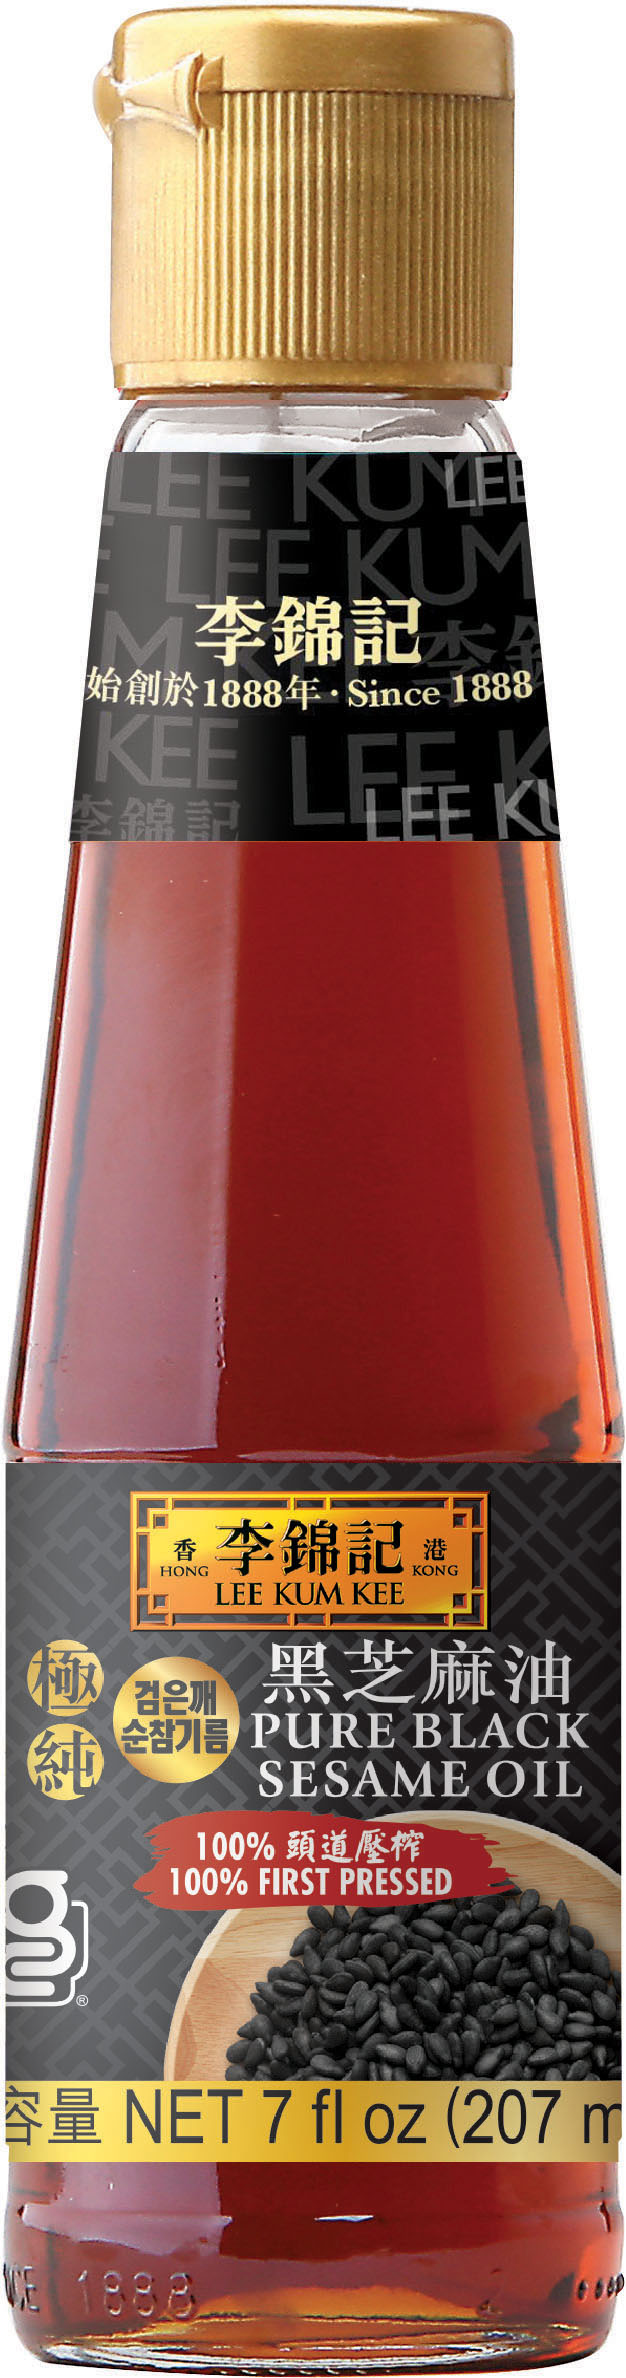 Pure Black Sesame Oil 7 fl oz (207ml) Bottle